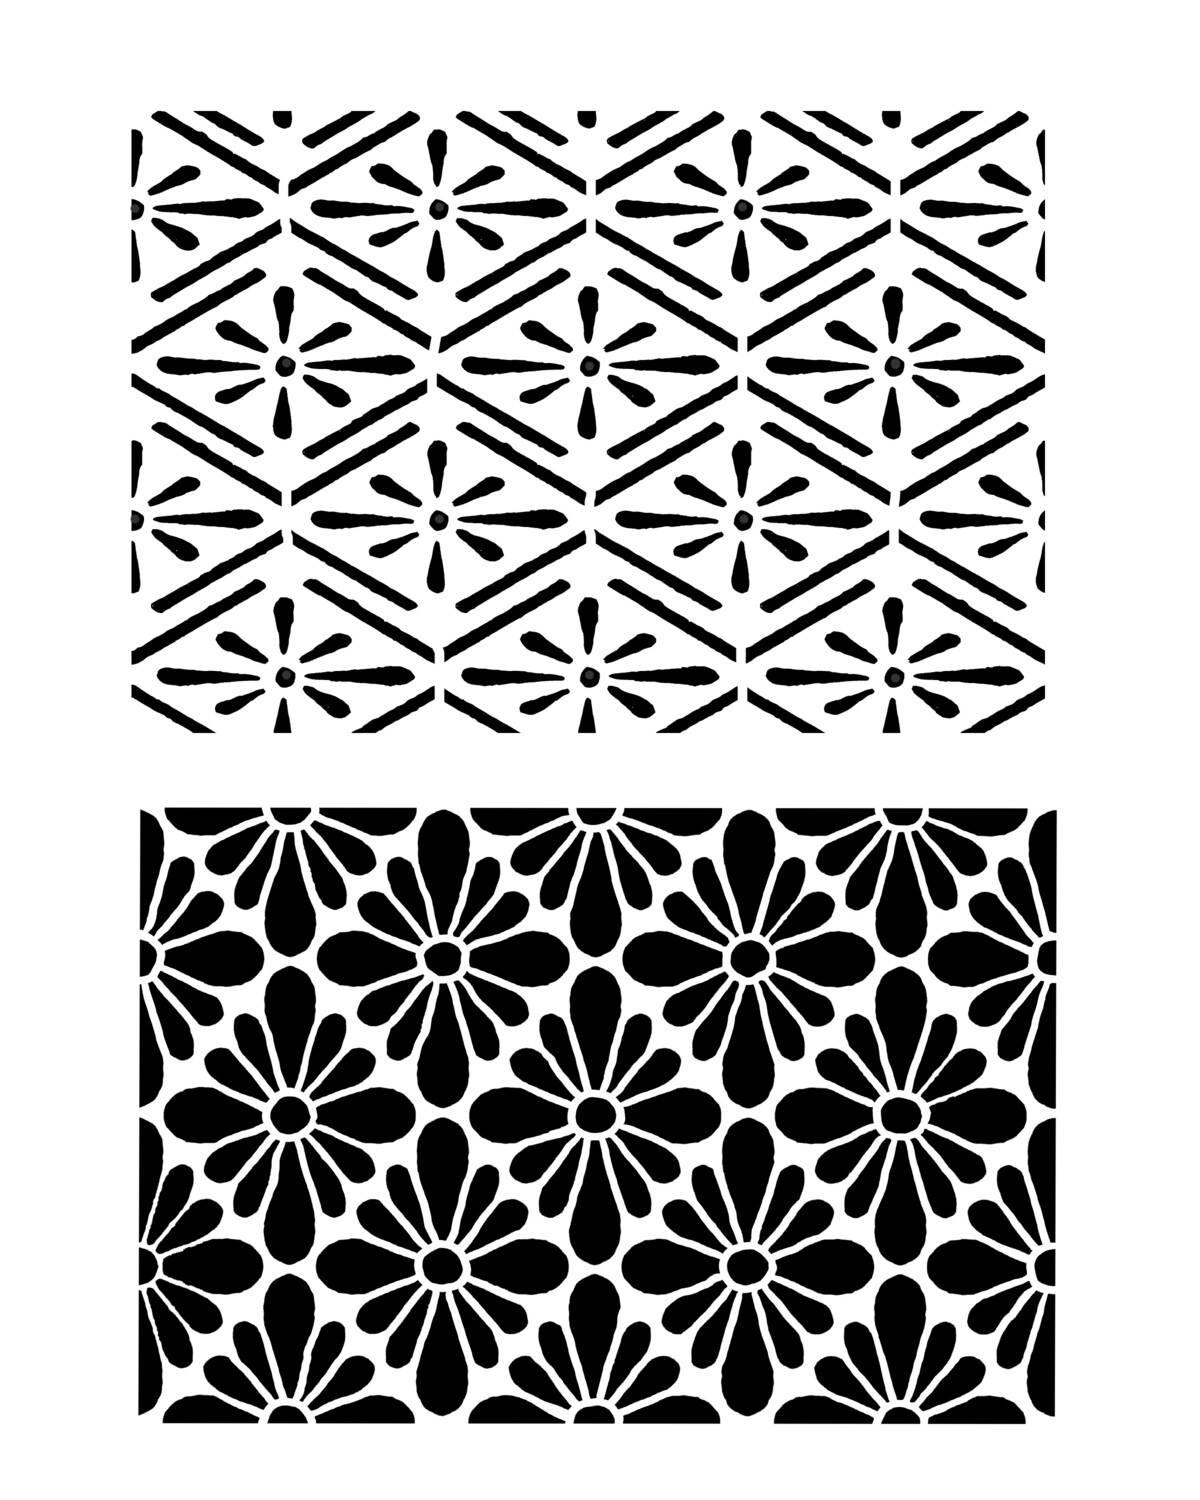 Vintage patterns duo 1 stencil 8x10